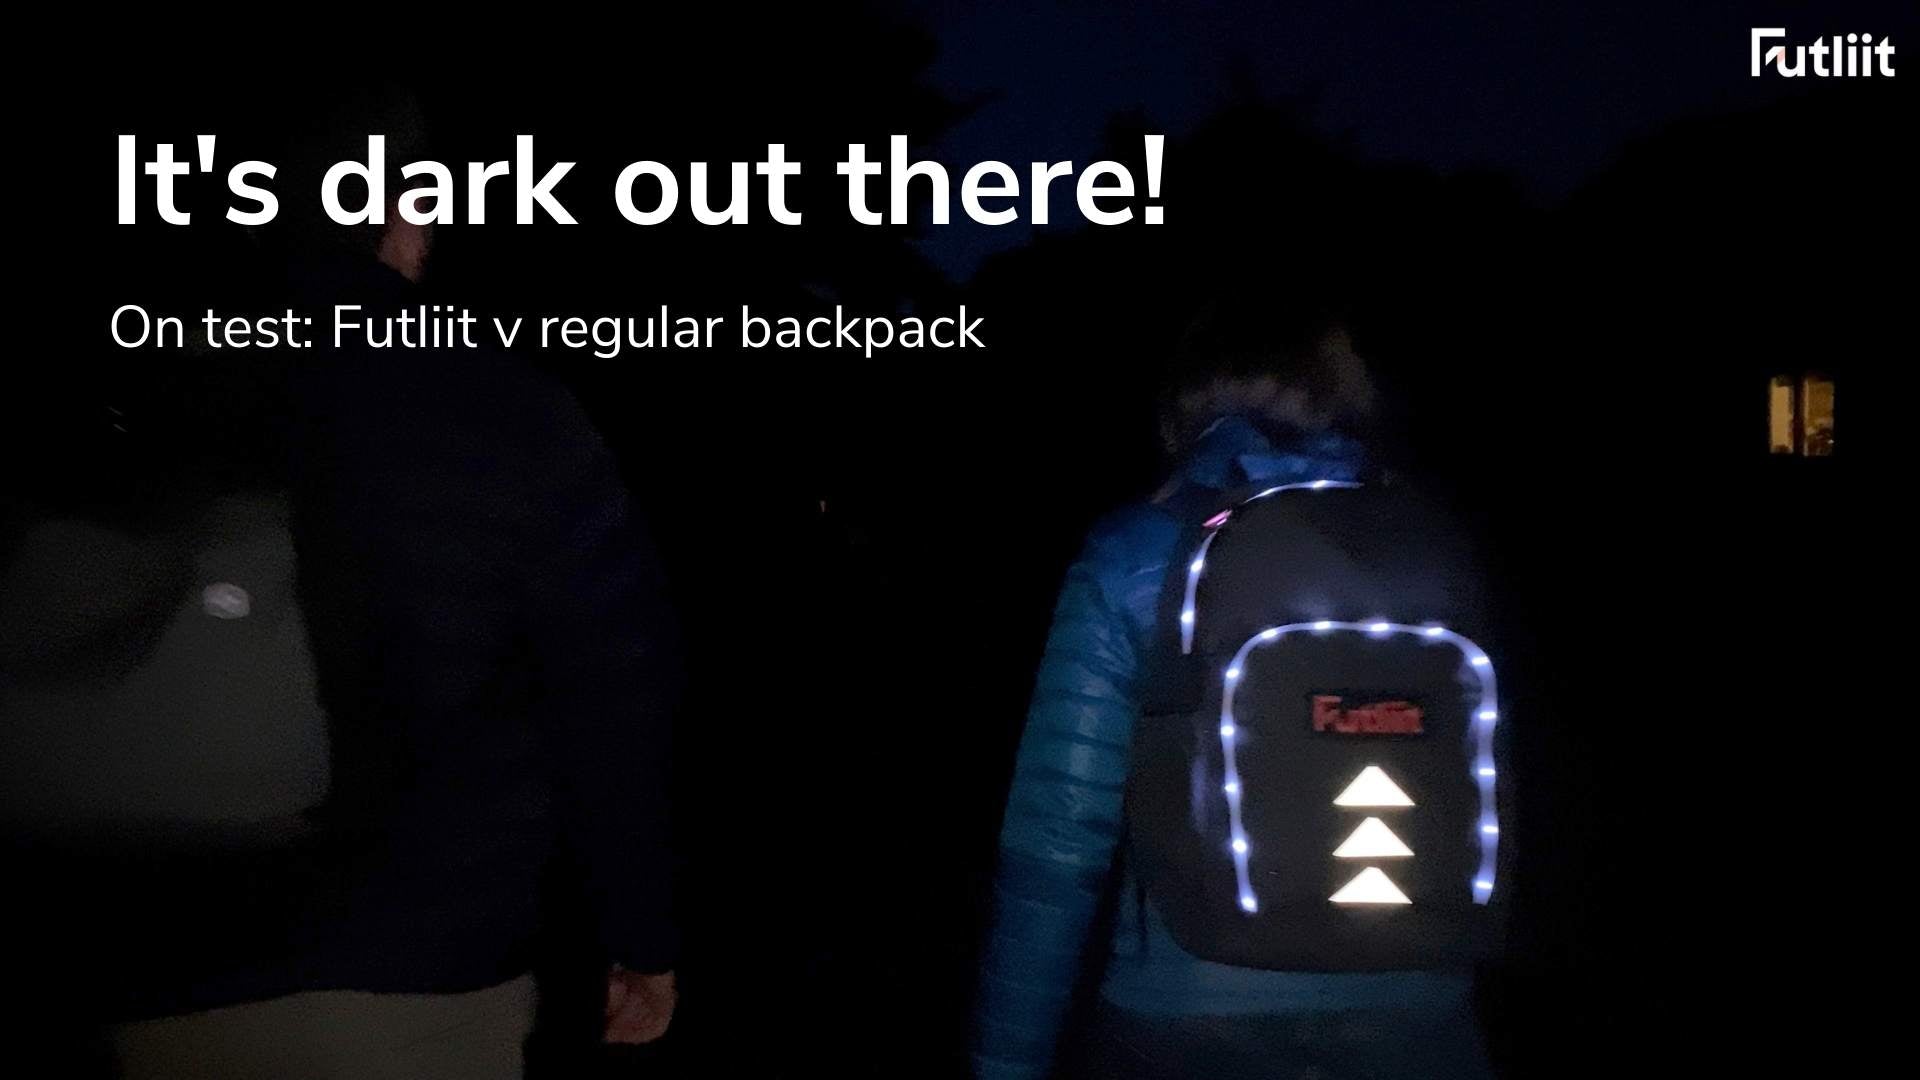 Load video: Futliit LED backpack being worn in the dark.